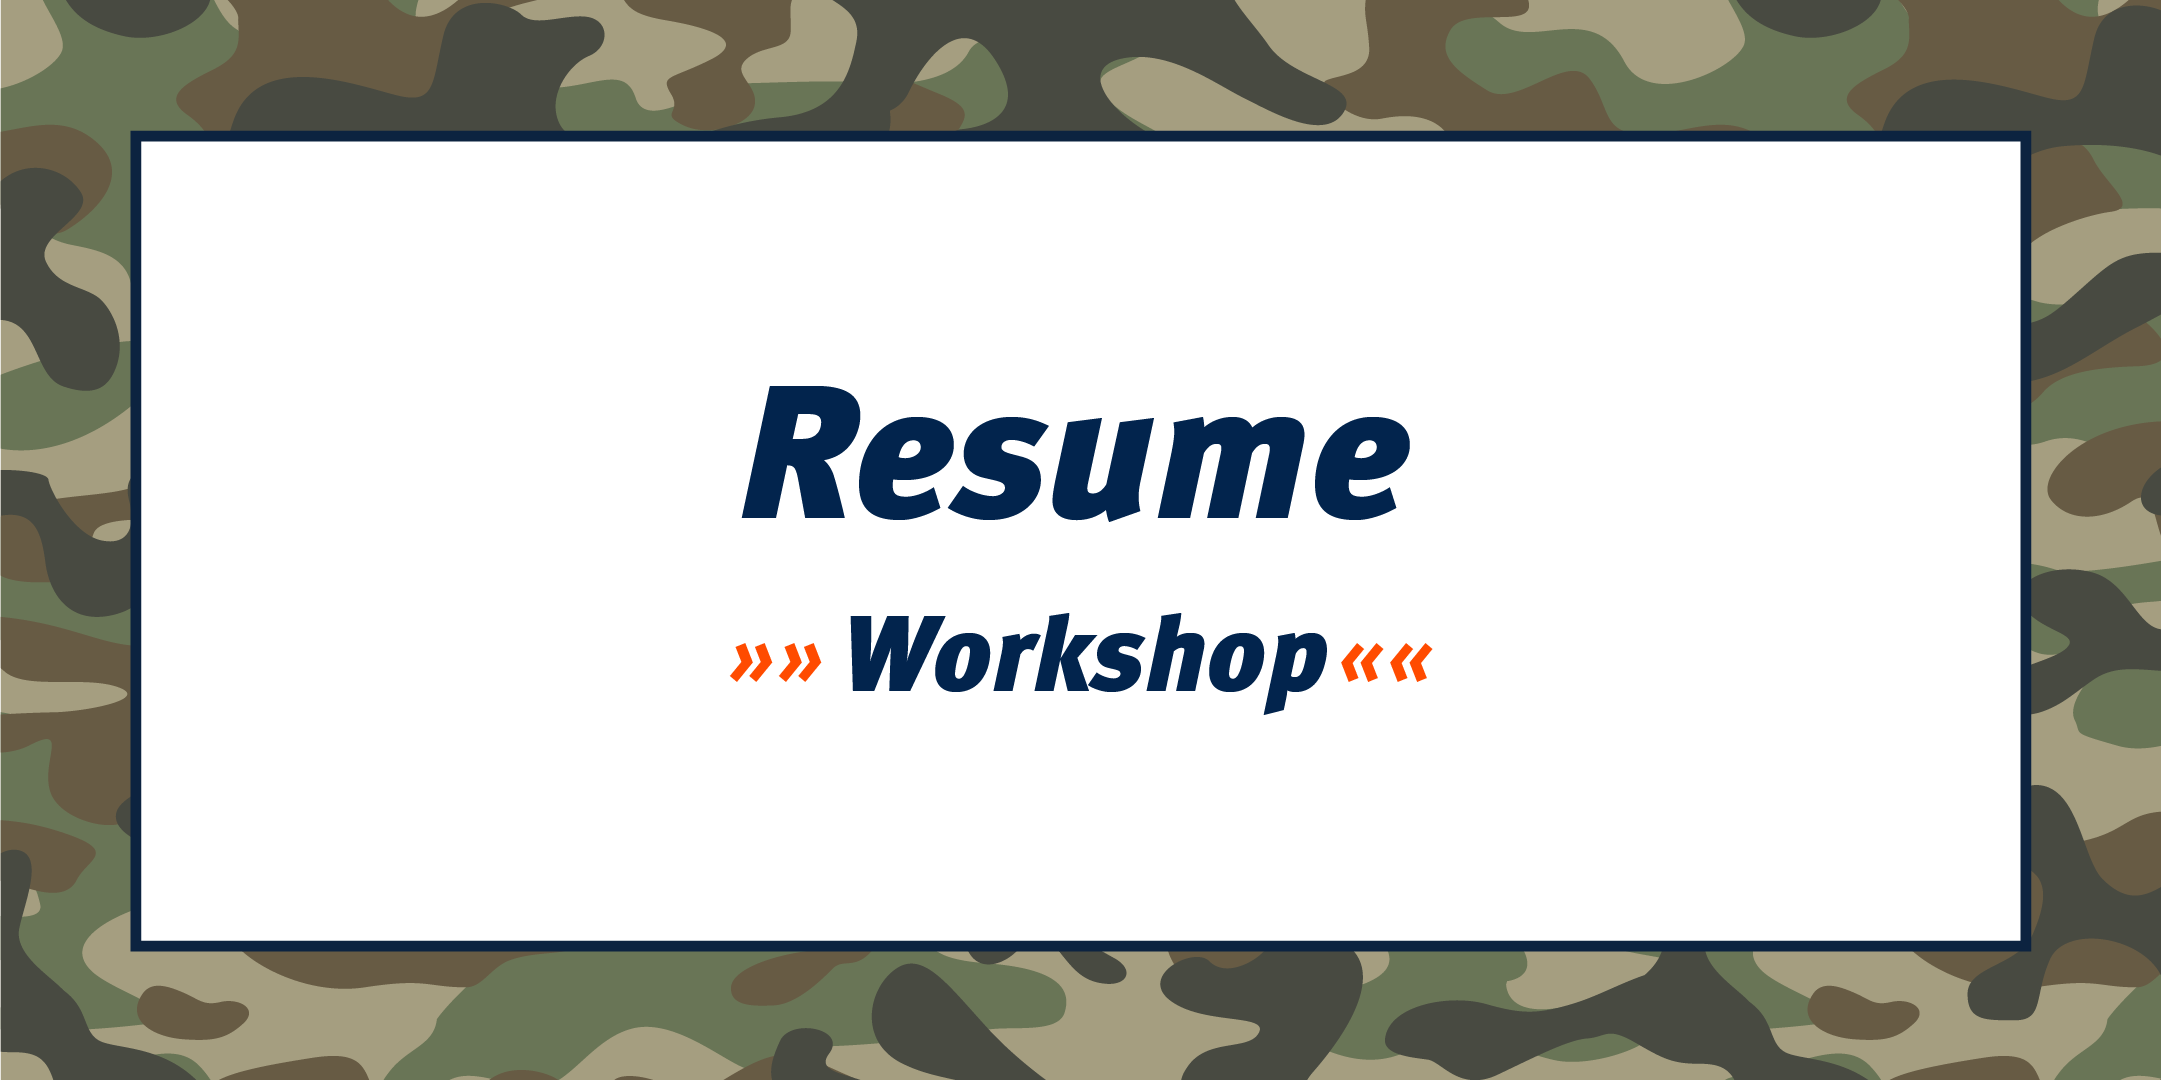 Resume Workshop